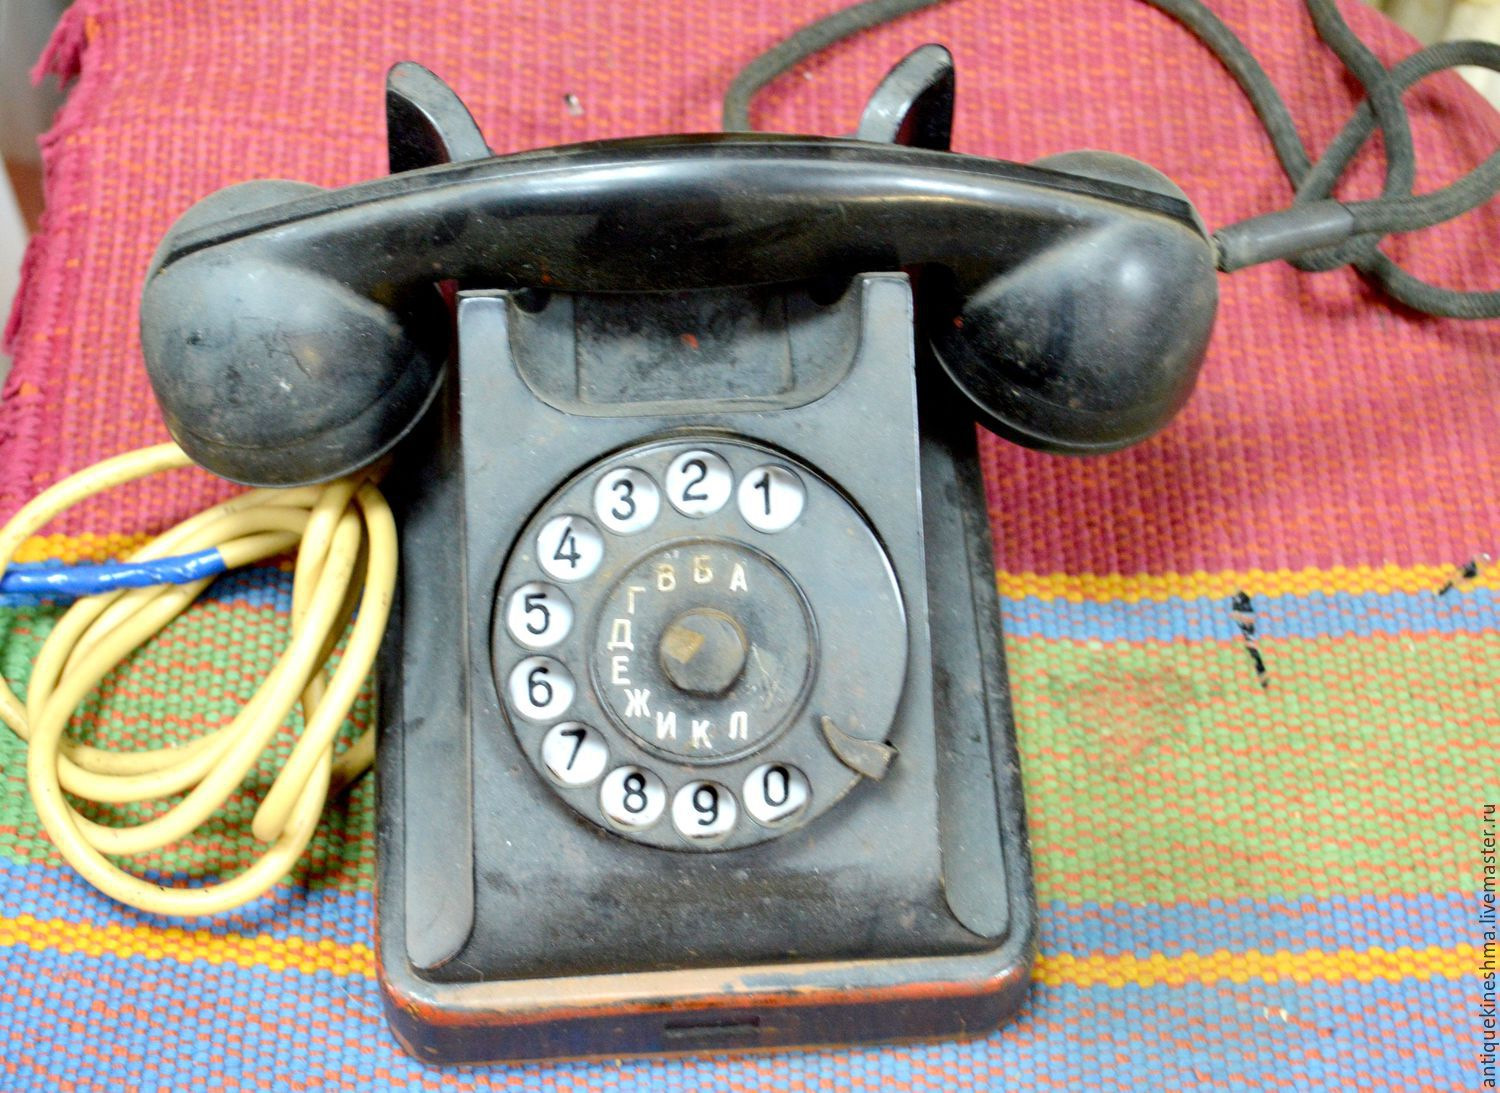 Где найти старый телефон. Старинный телефонный аппарат. Дисковый телефонный аппарат. Старый телефон. Телефонный аппарат СССР.